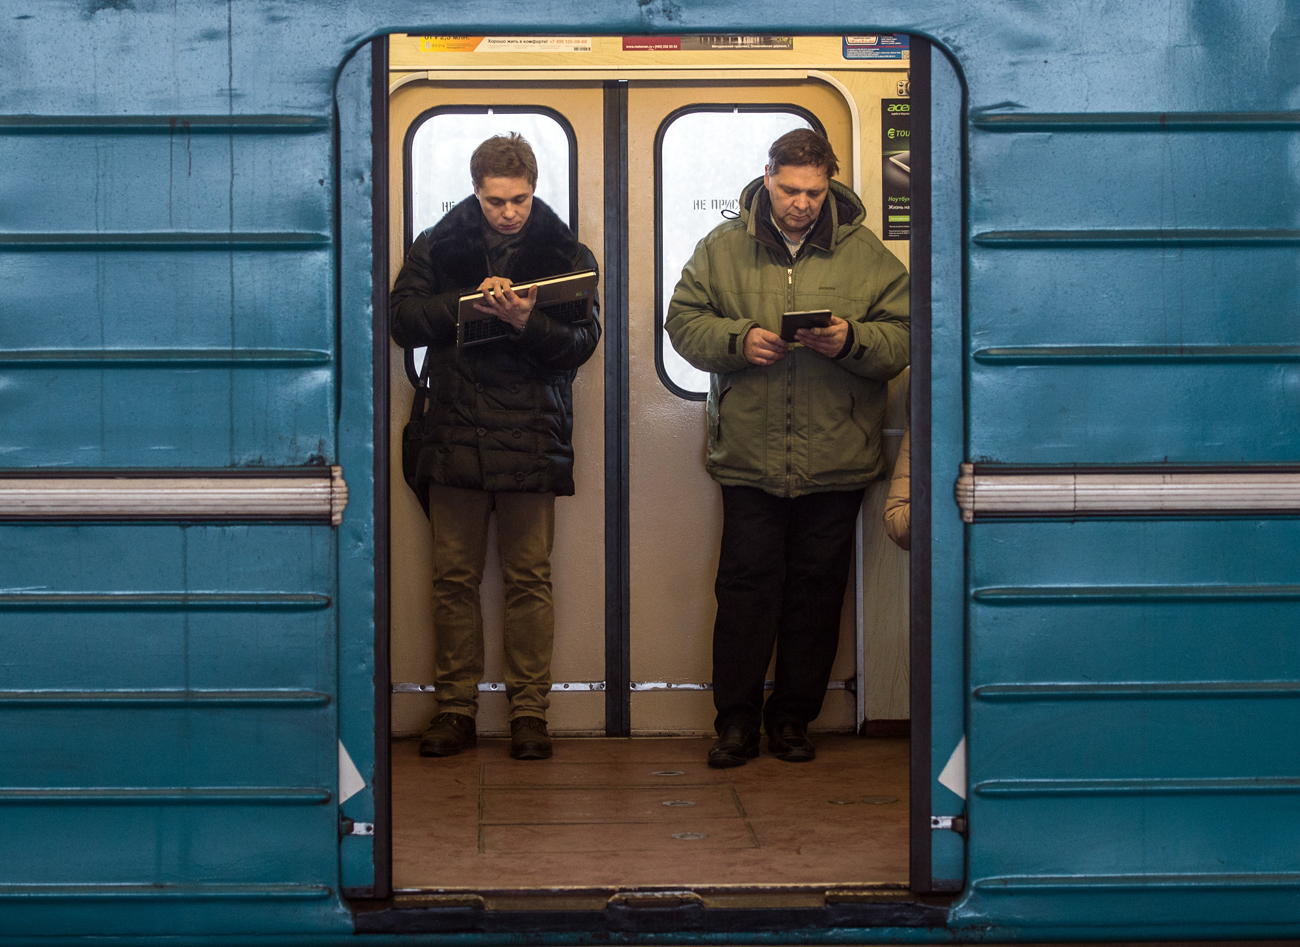 Passeggeri navigano su internet nella metro di Mosca, dove è presente un servizio di Wi-Fi gratuito.